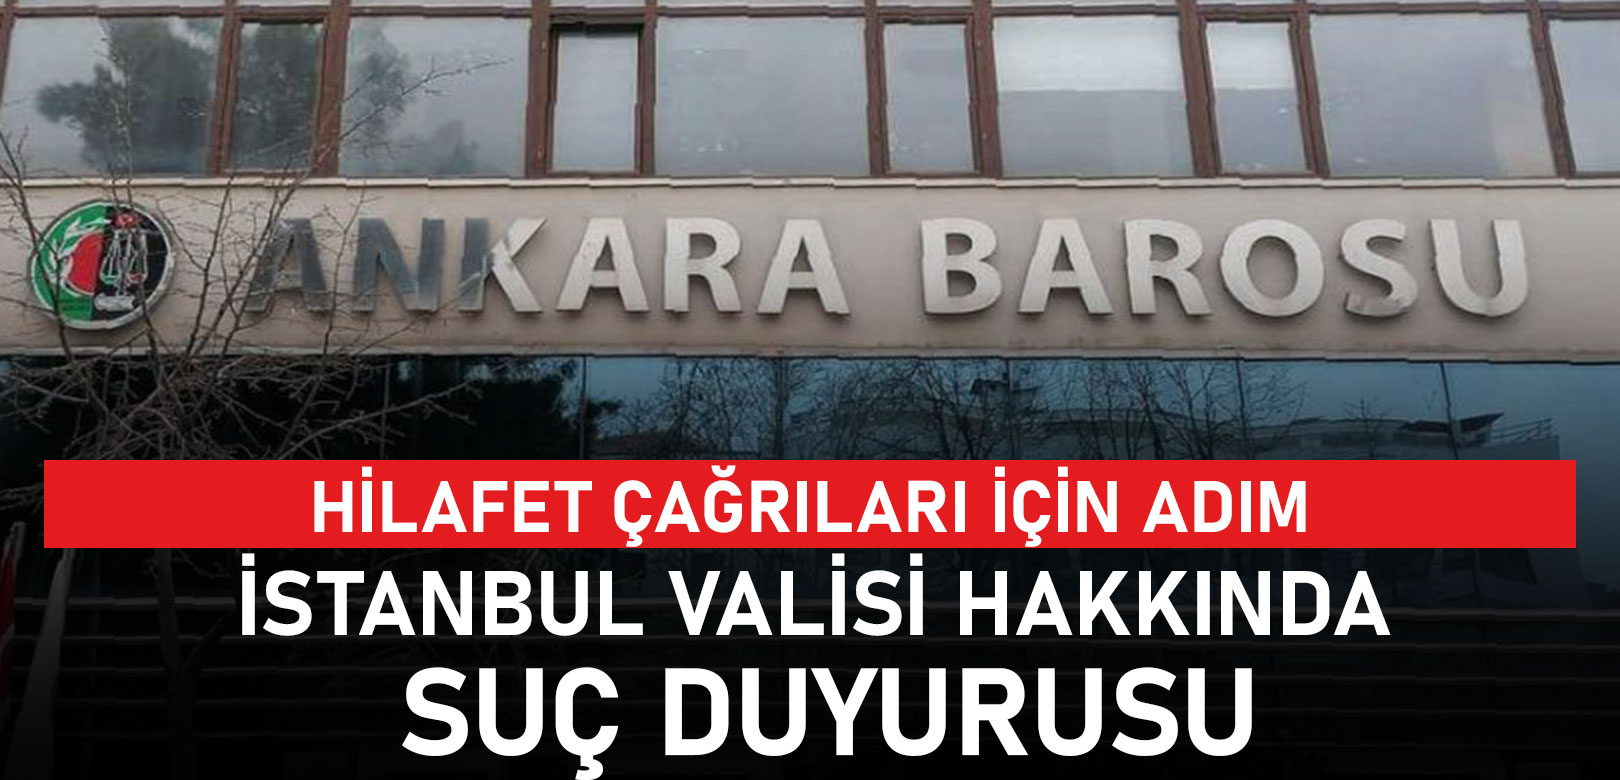 Ankara Barosu'ndan hilafet bayrağı açan kişiler ve İstanbul Valisi Davut Gül hakkında suç duyurusu